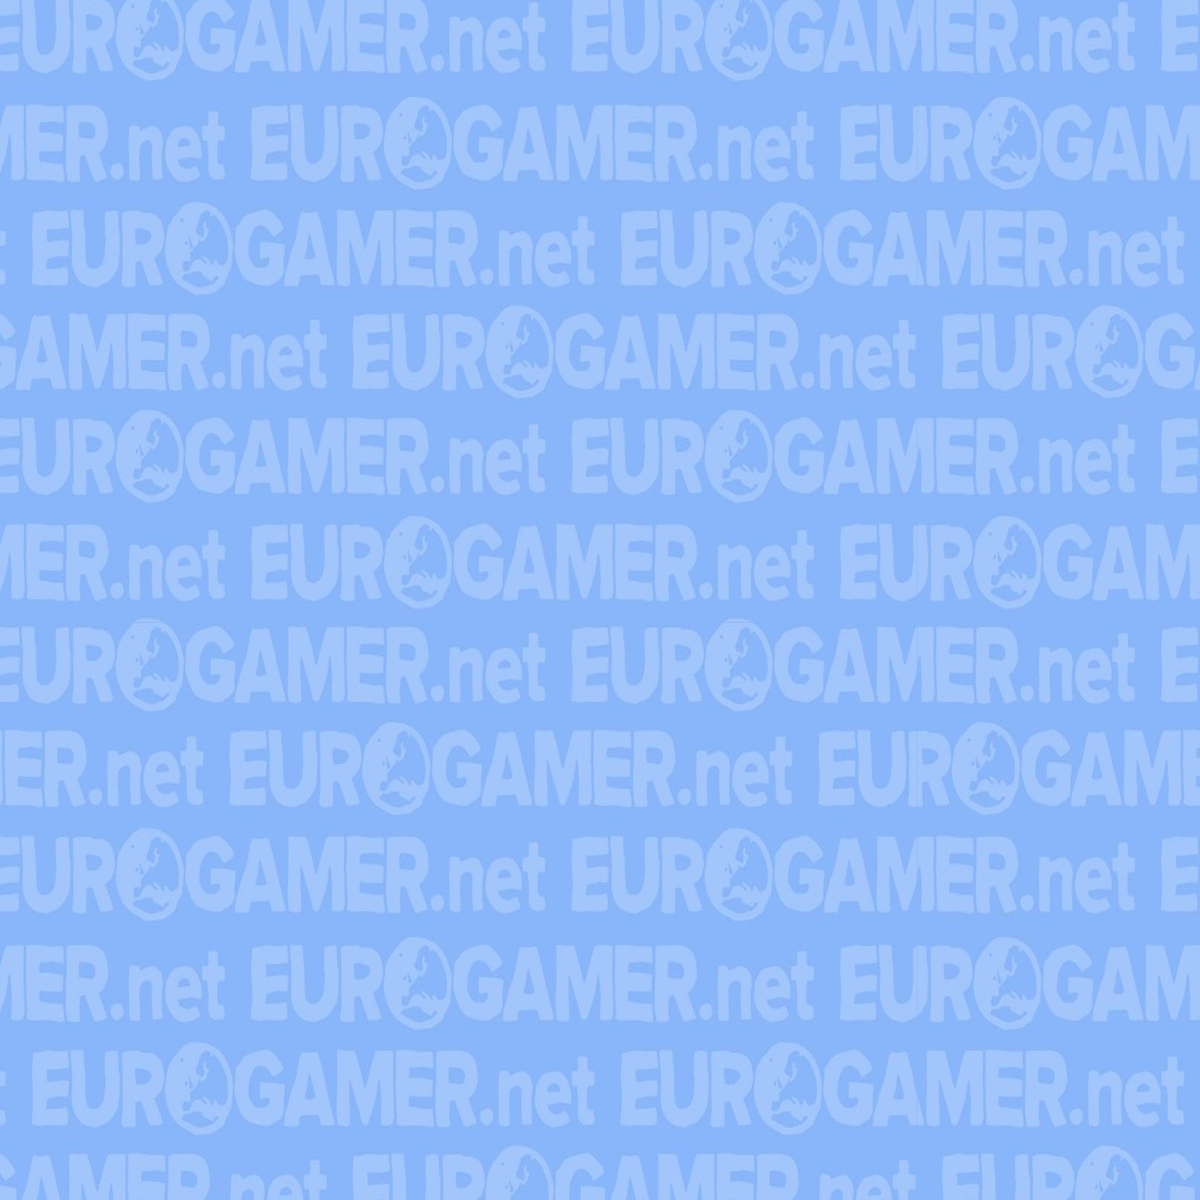 Eurogamer is hiring